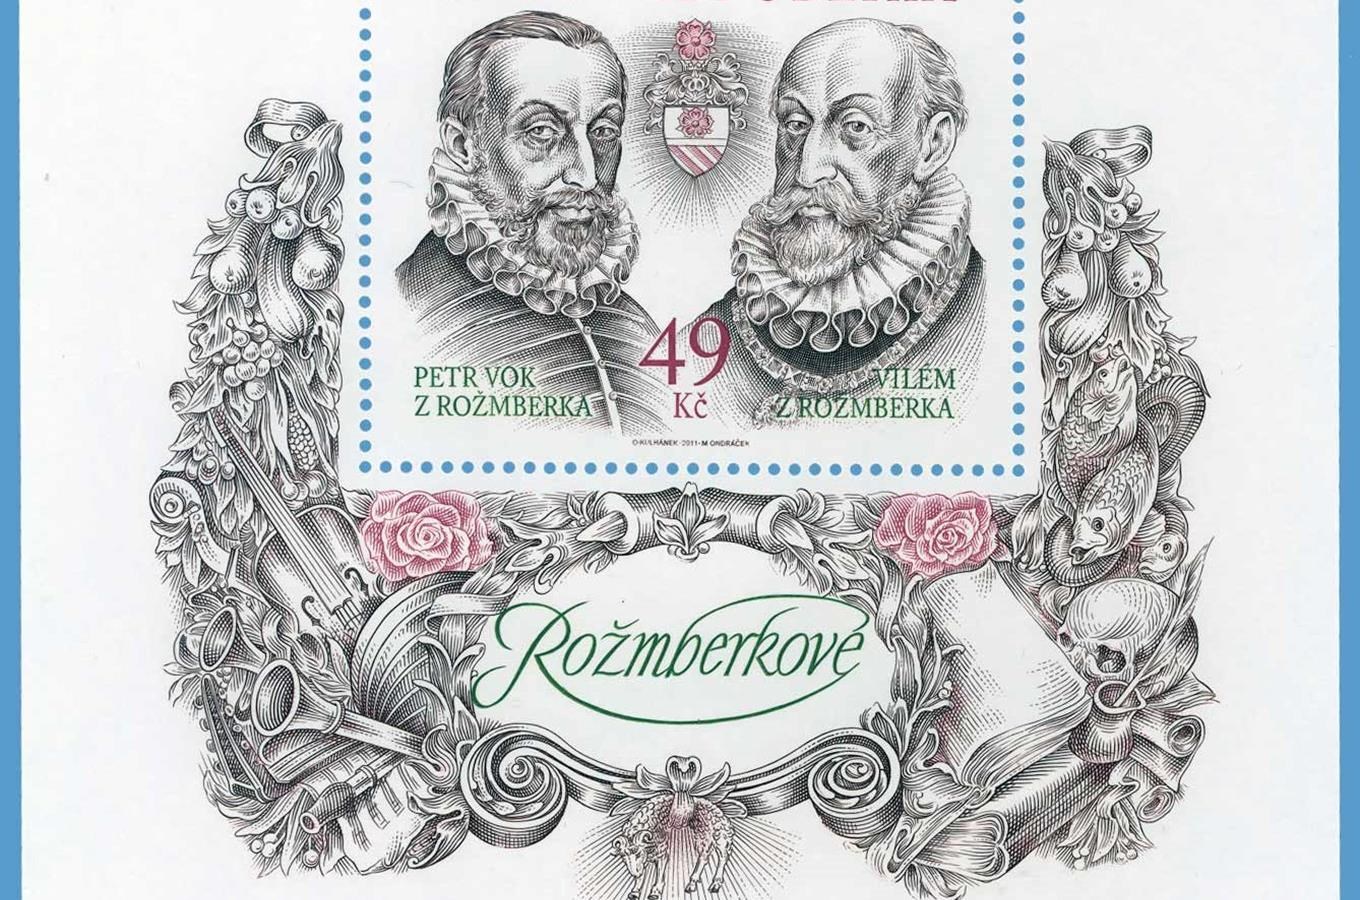 Nová poštovní známka připomíná poslední Rožmberky - Viléma a Petra Voka